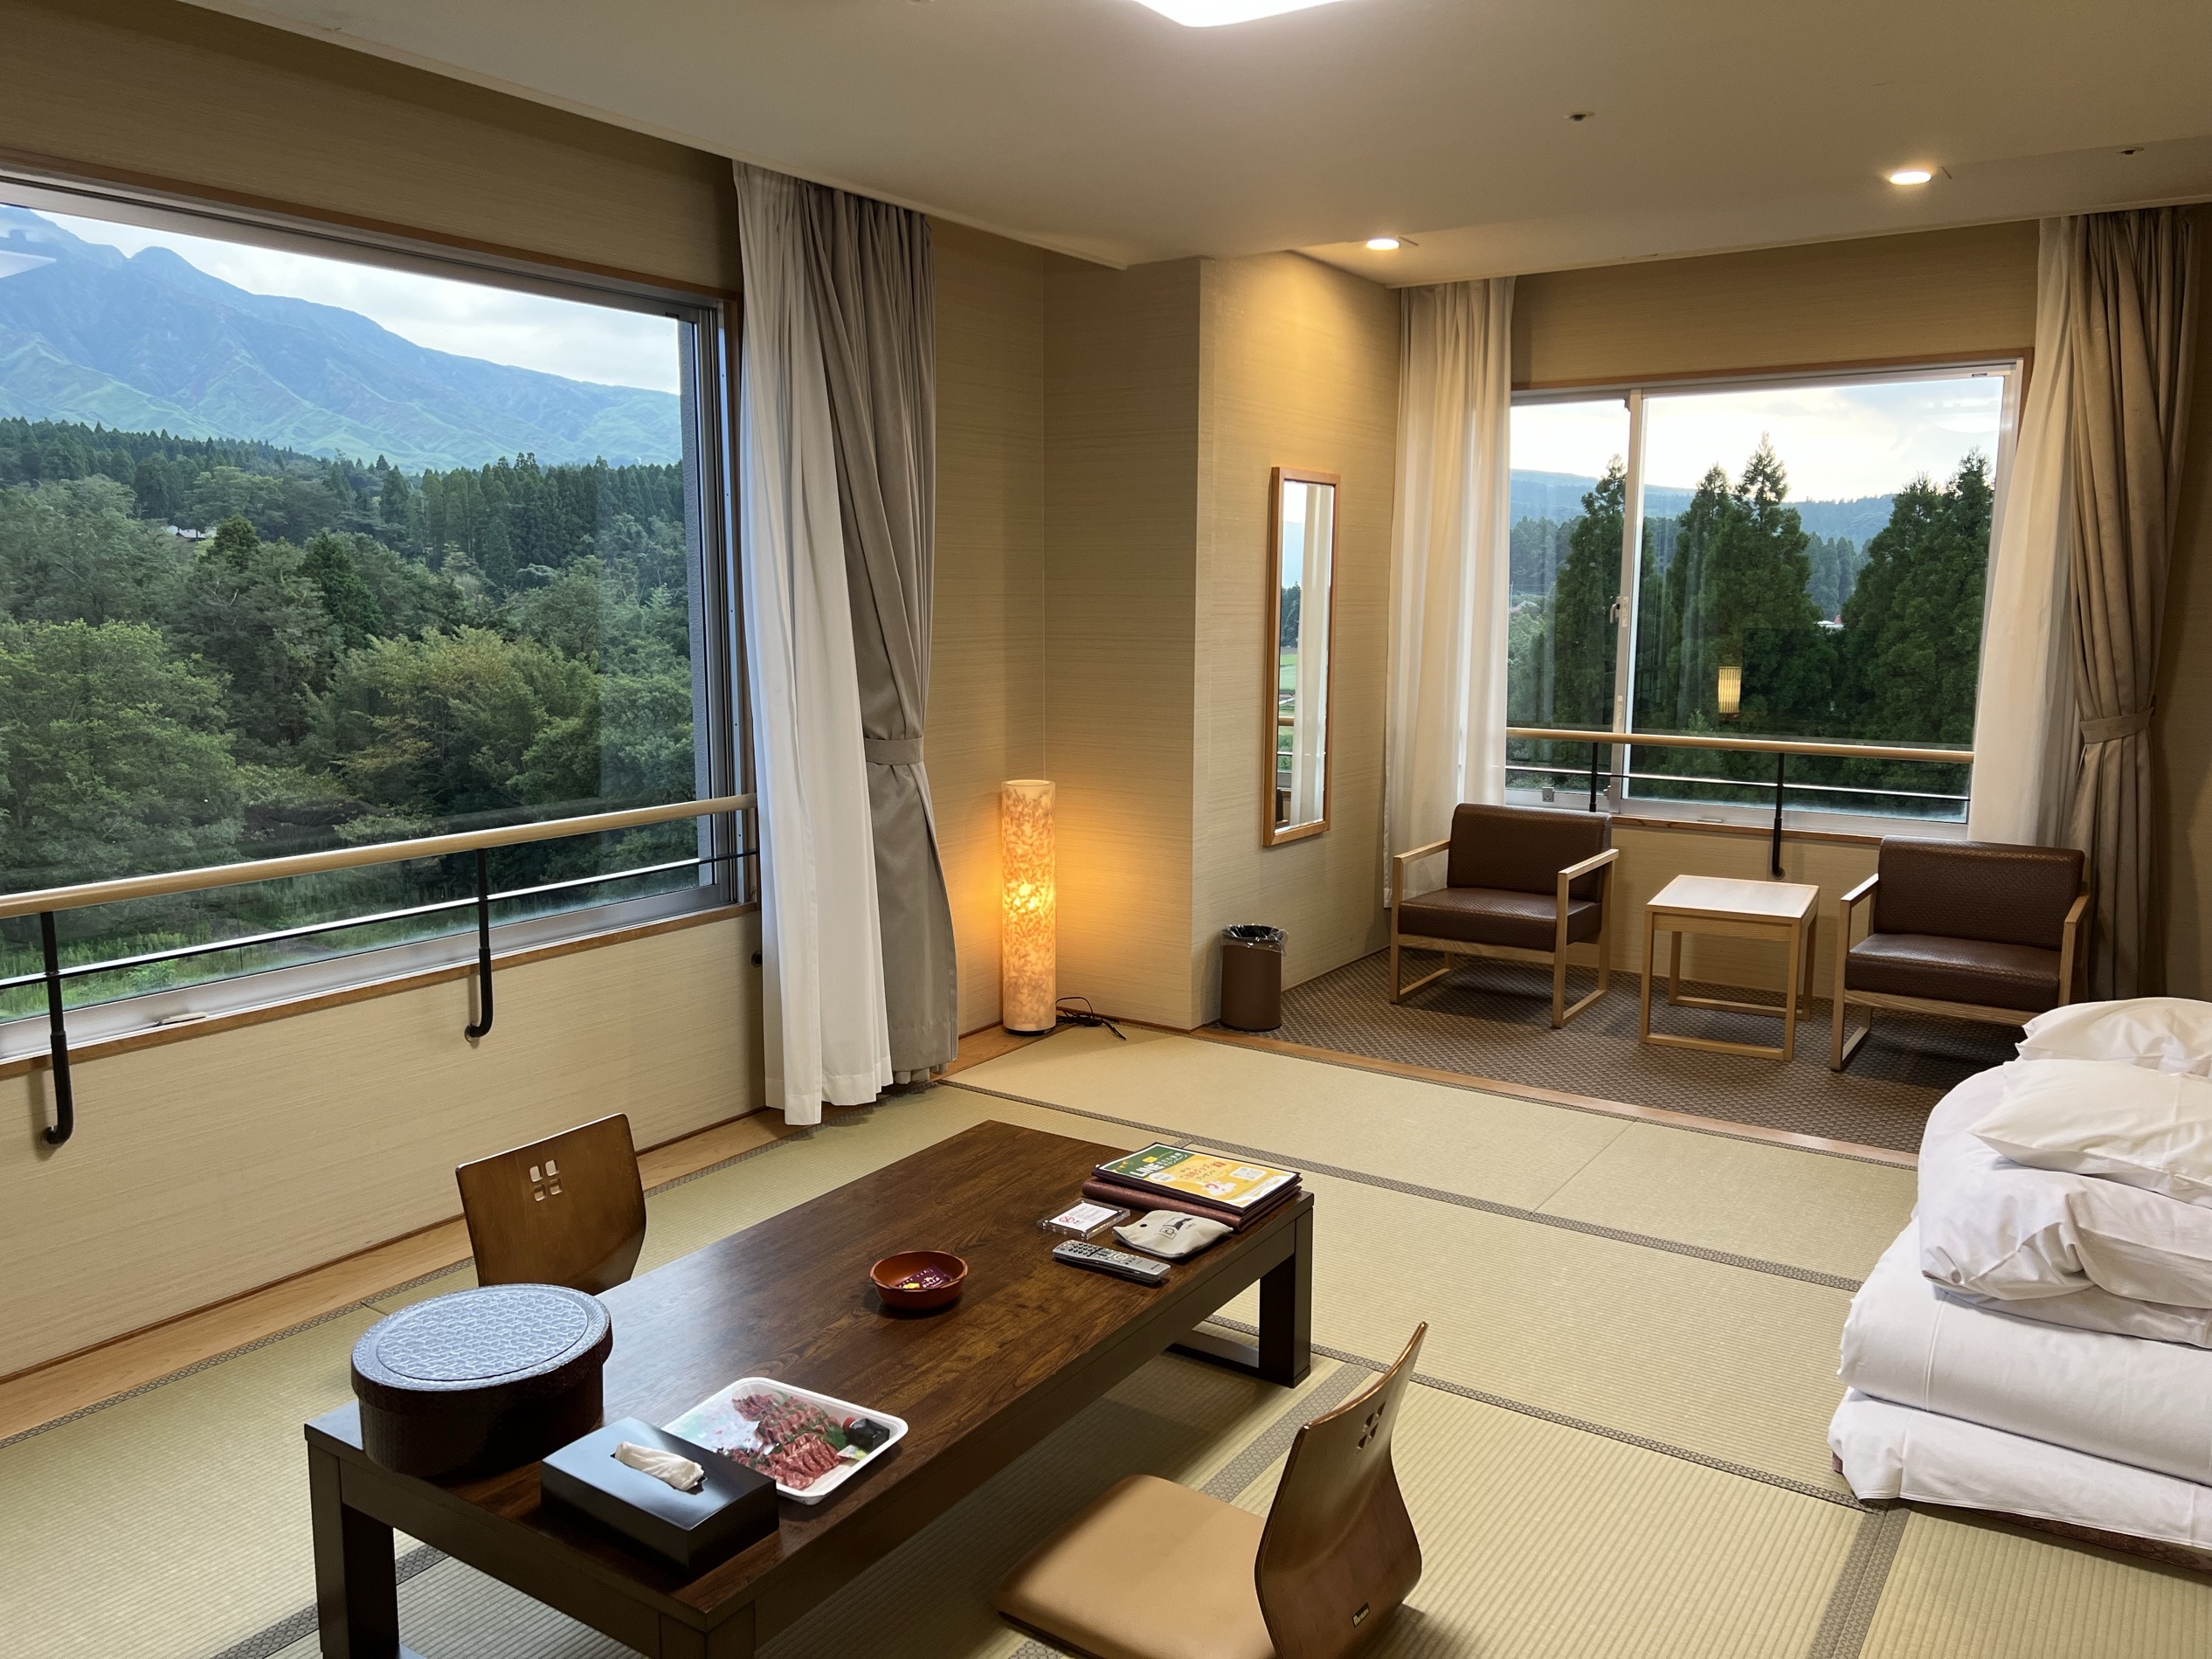 房间很新很宽敞，拉开窗帘就能看到阿苏山，推荐37平米的房间，观景无敌👍，酒店自助餐也不错，晚餐有长脚